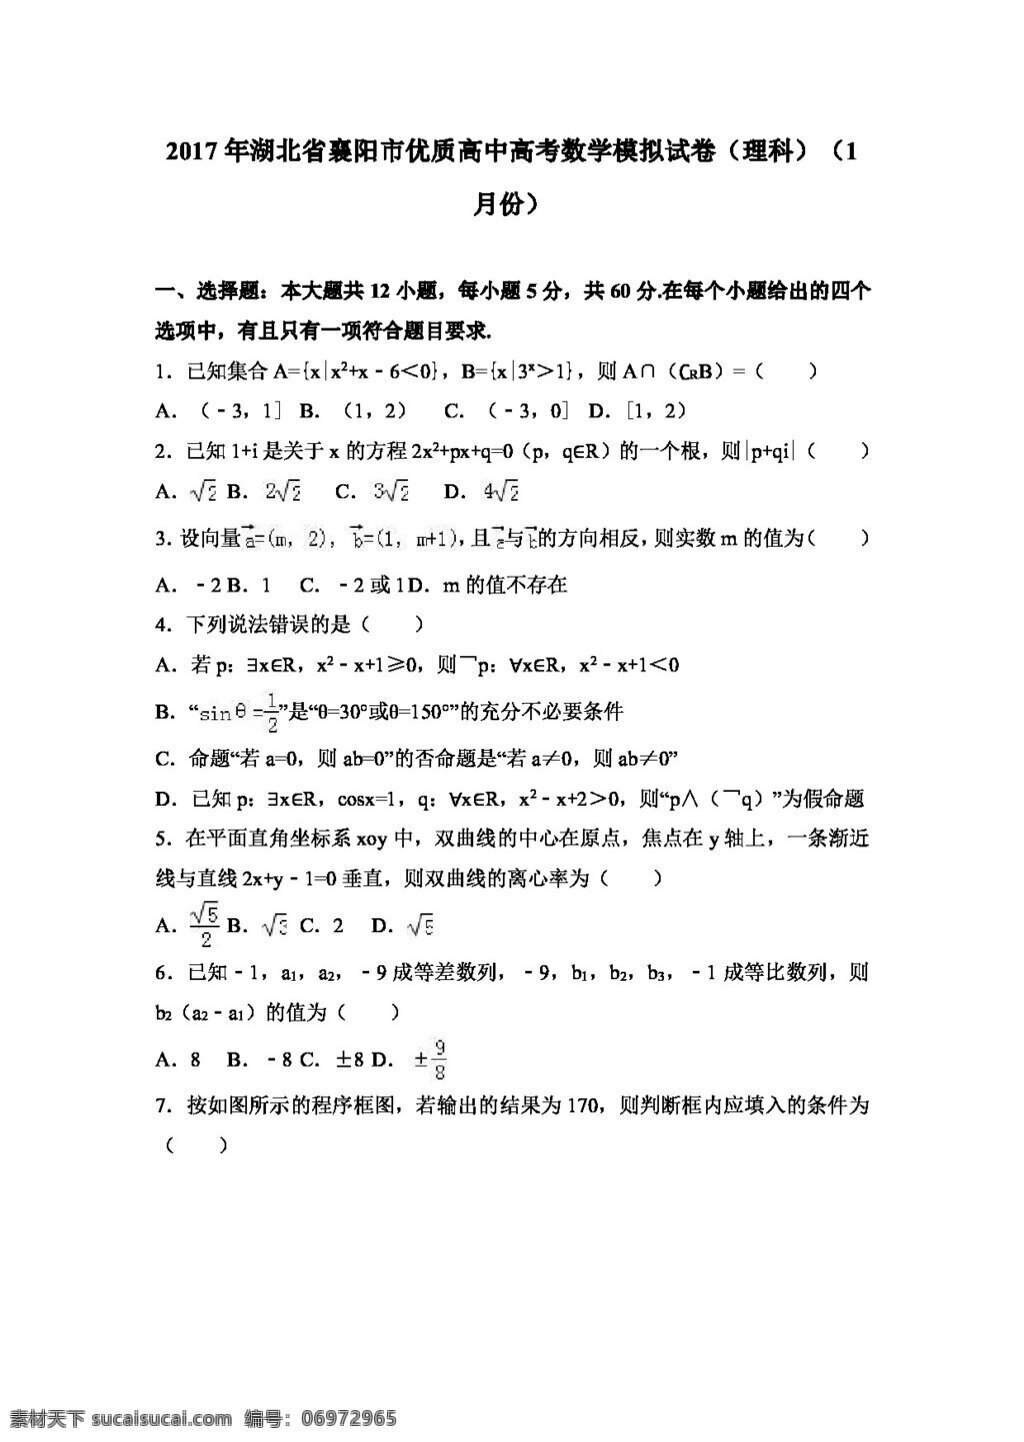 数学 人教 版 2017 年 湖北省 襄阳 市 优质 高中 高考 模拟试卷 理科 月份 高考专区 人教版 试卷